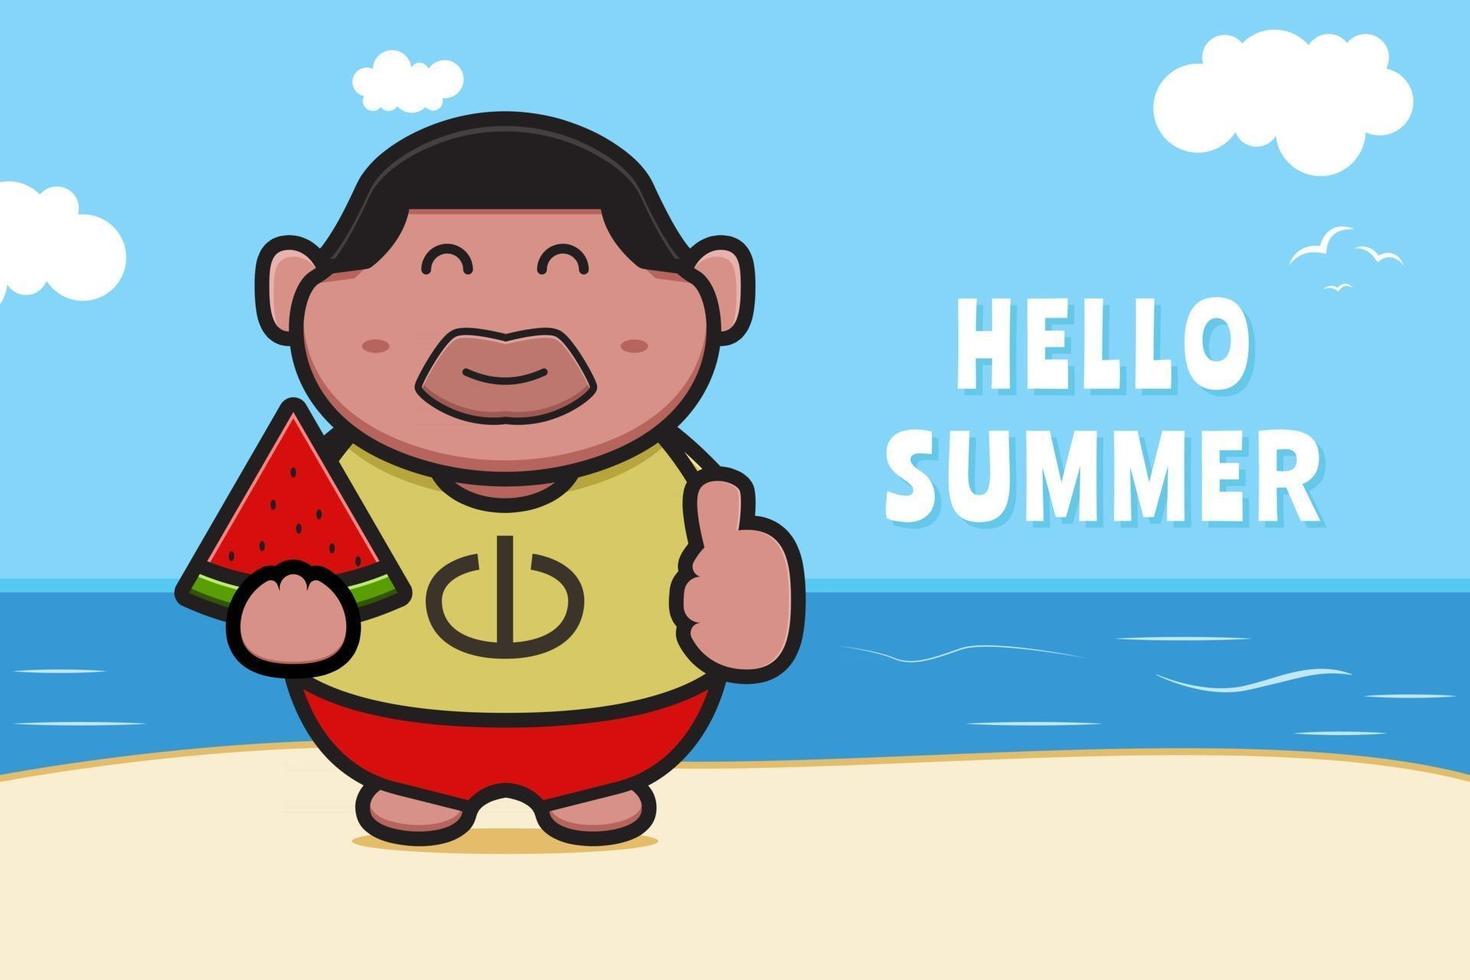 söt fet pojke som håller vattenmelon med en sommarhälsning banner tecknad vektor ikonillustration